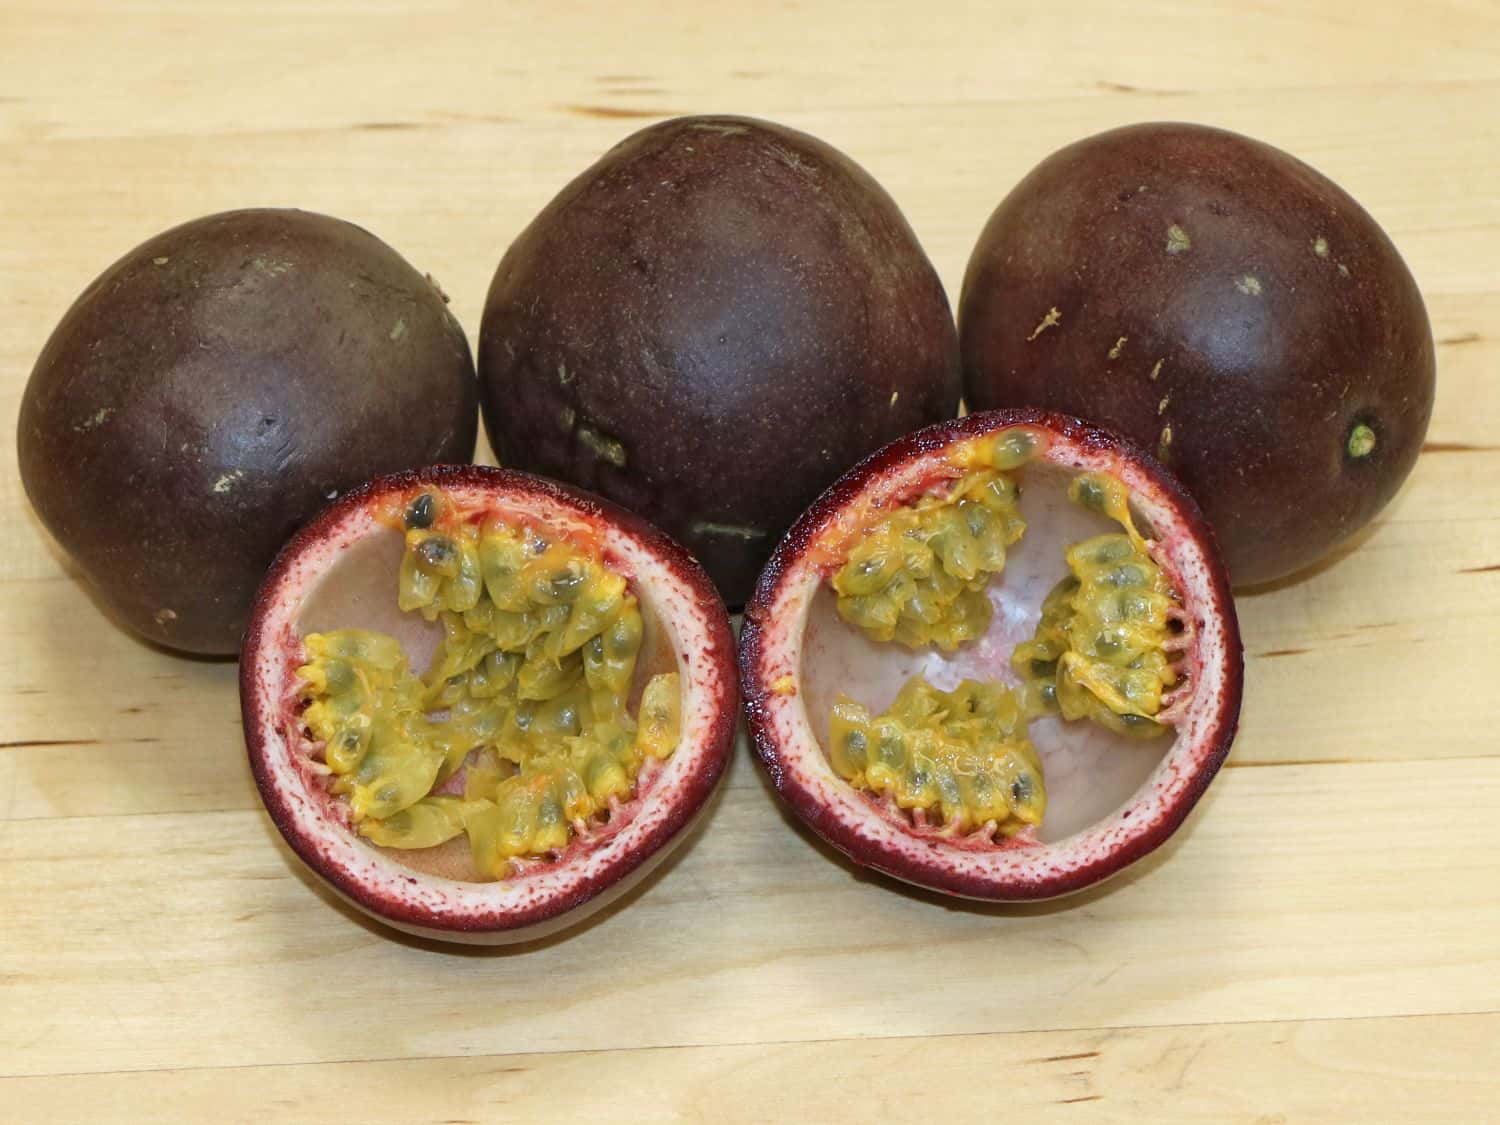 maracuja-passiflora-frutto-passione-frutto-pianta-esotica-italia-bio-aksxter.jpeg